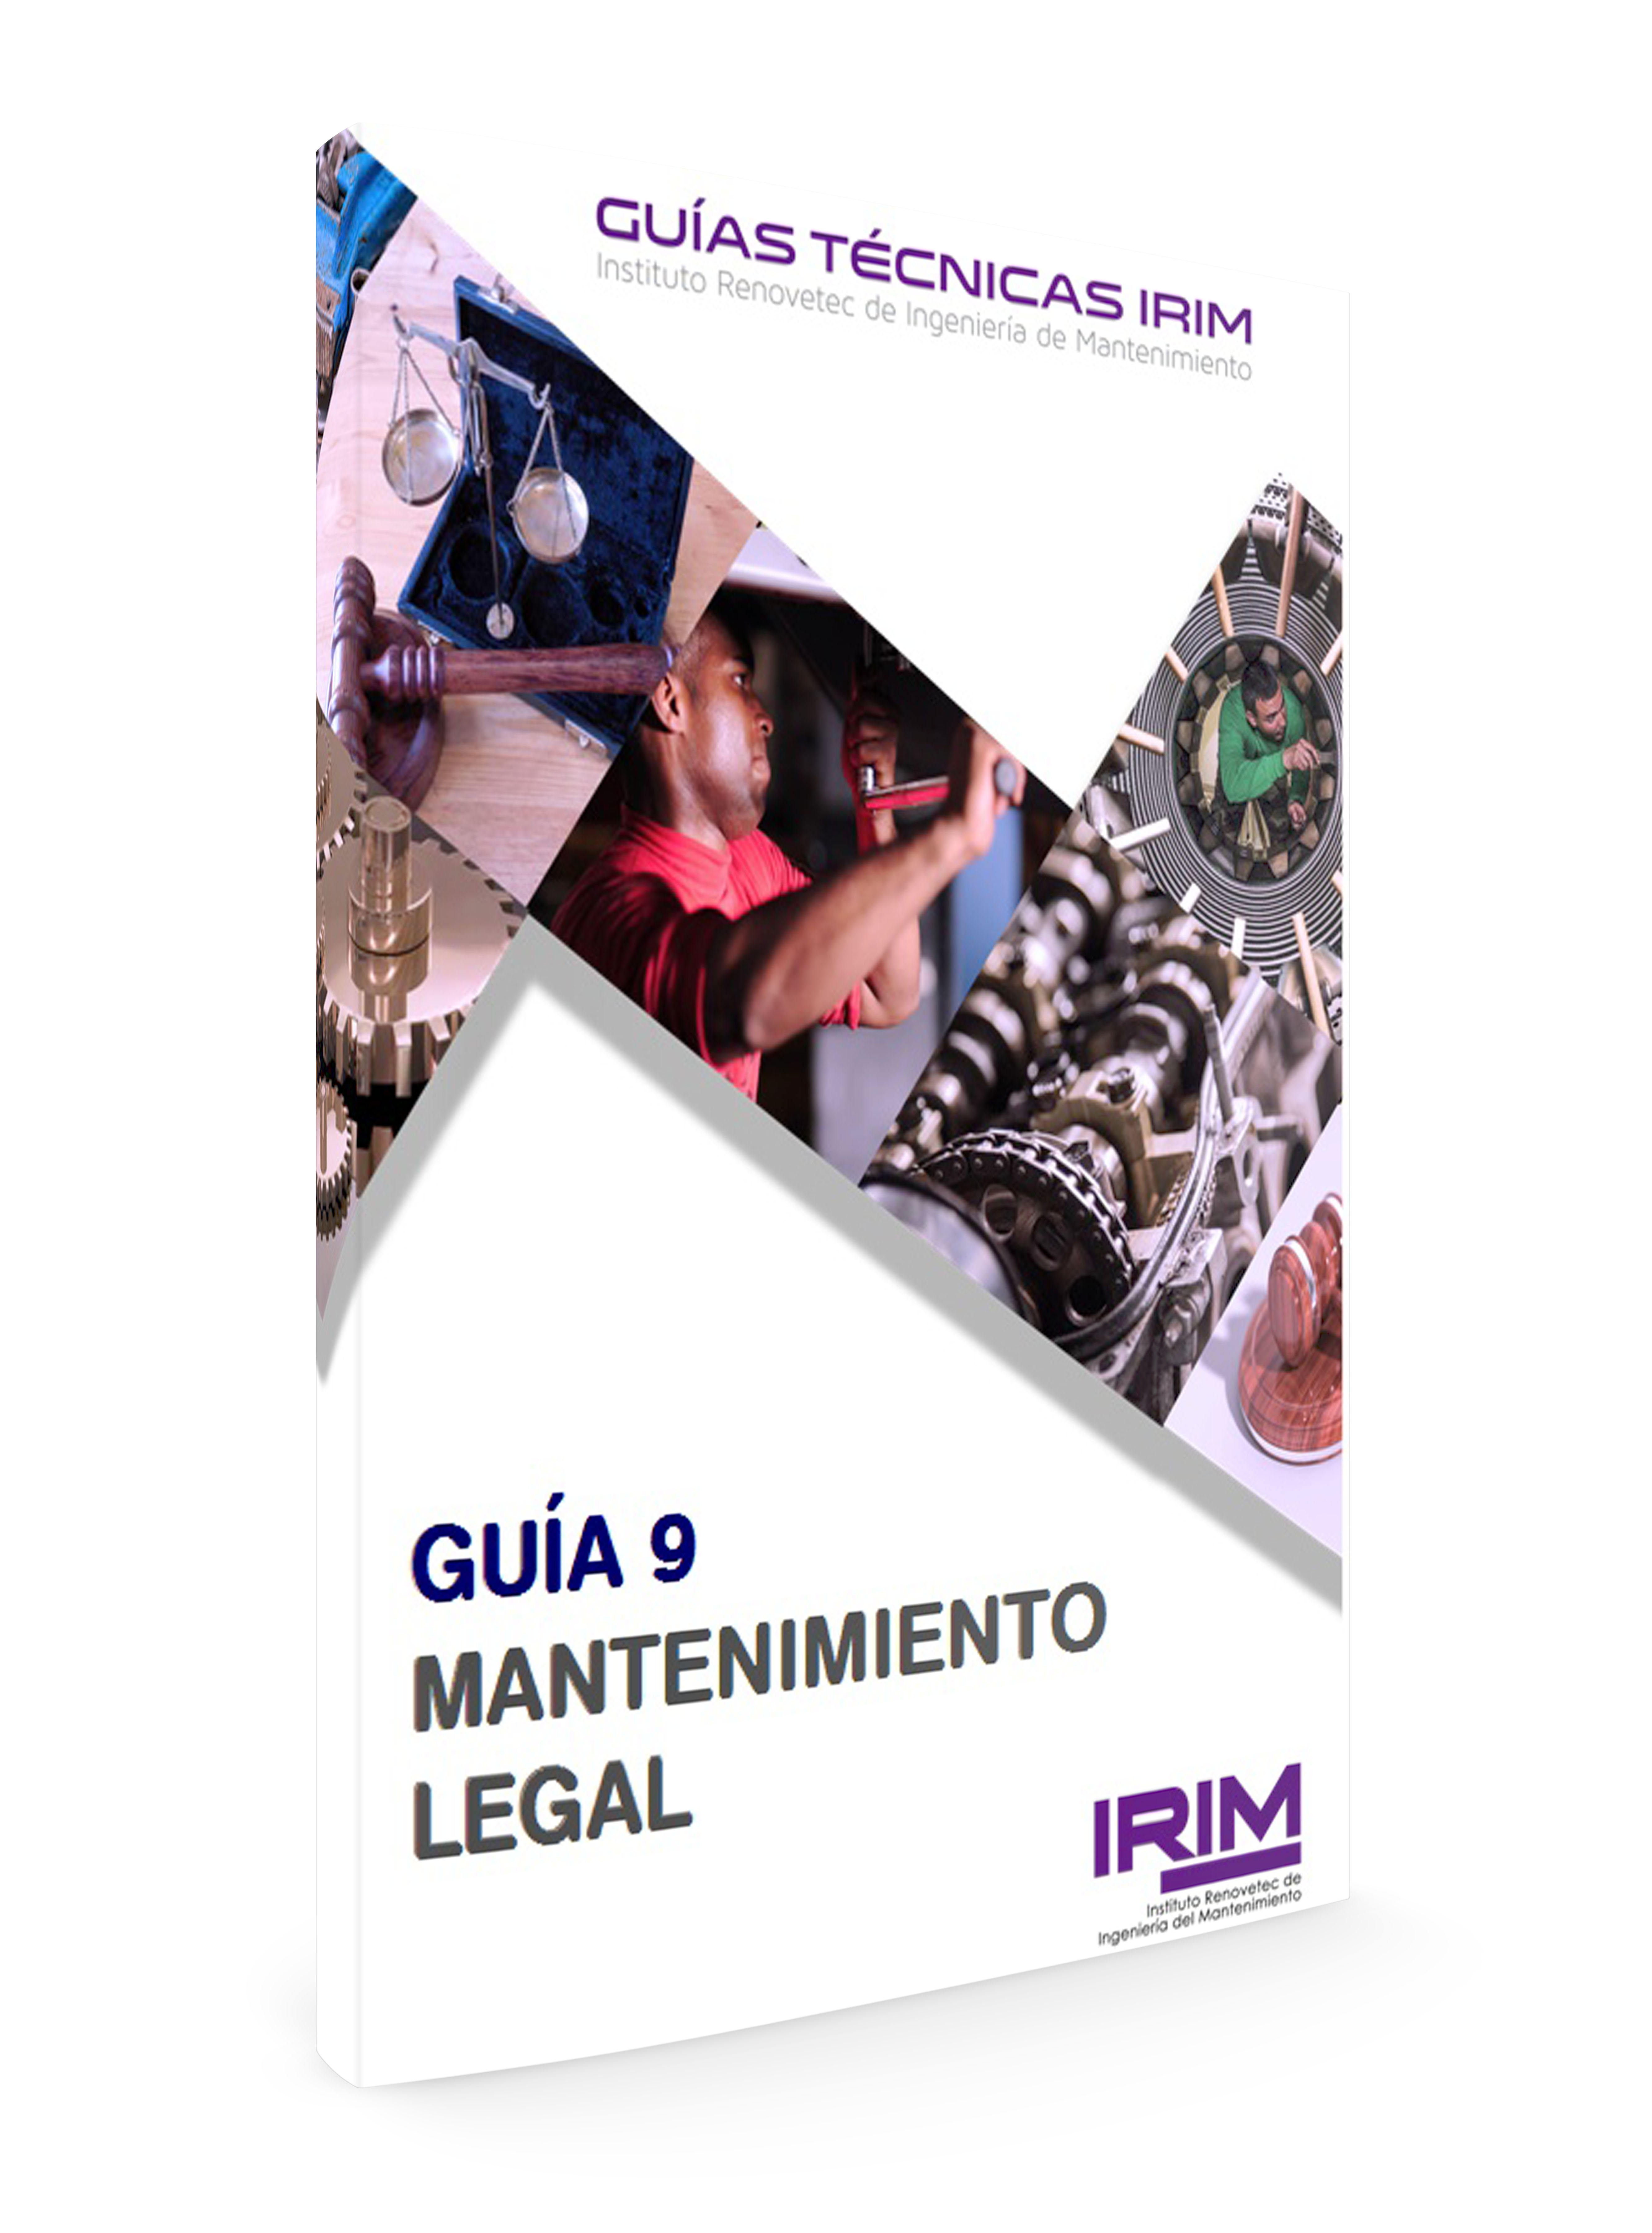 GUIA 9 IRIM: MATENIMIENTO LEGAL